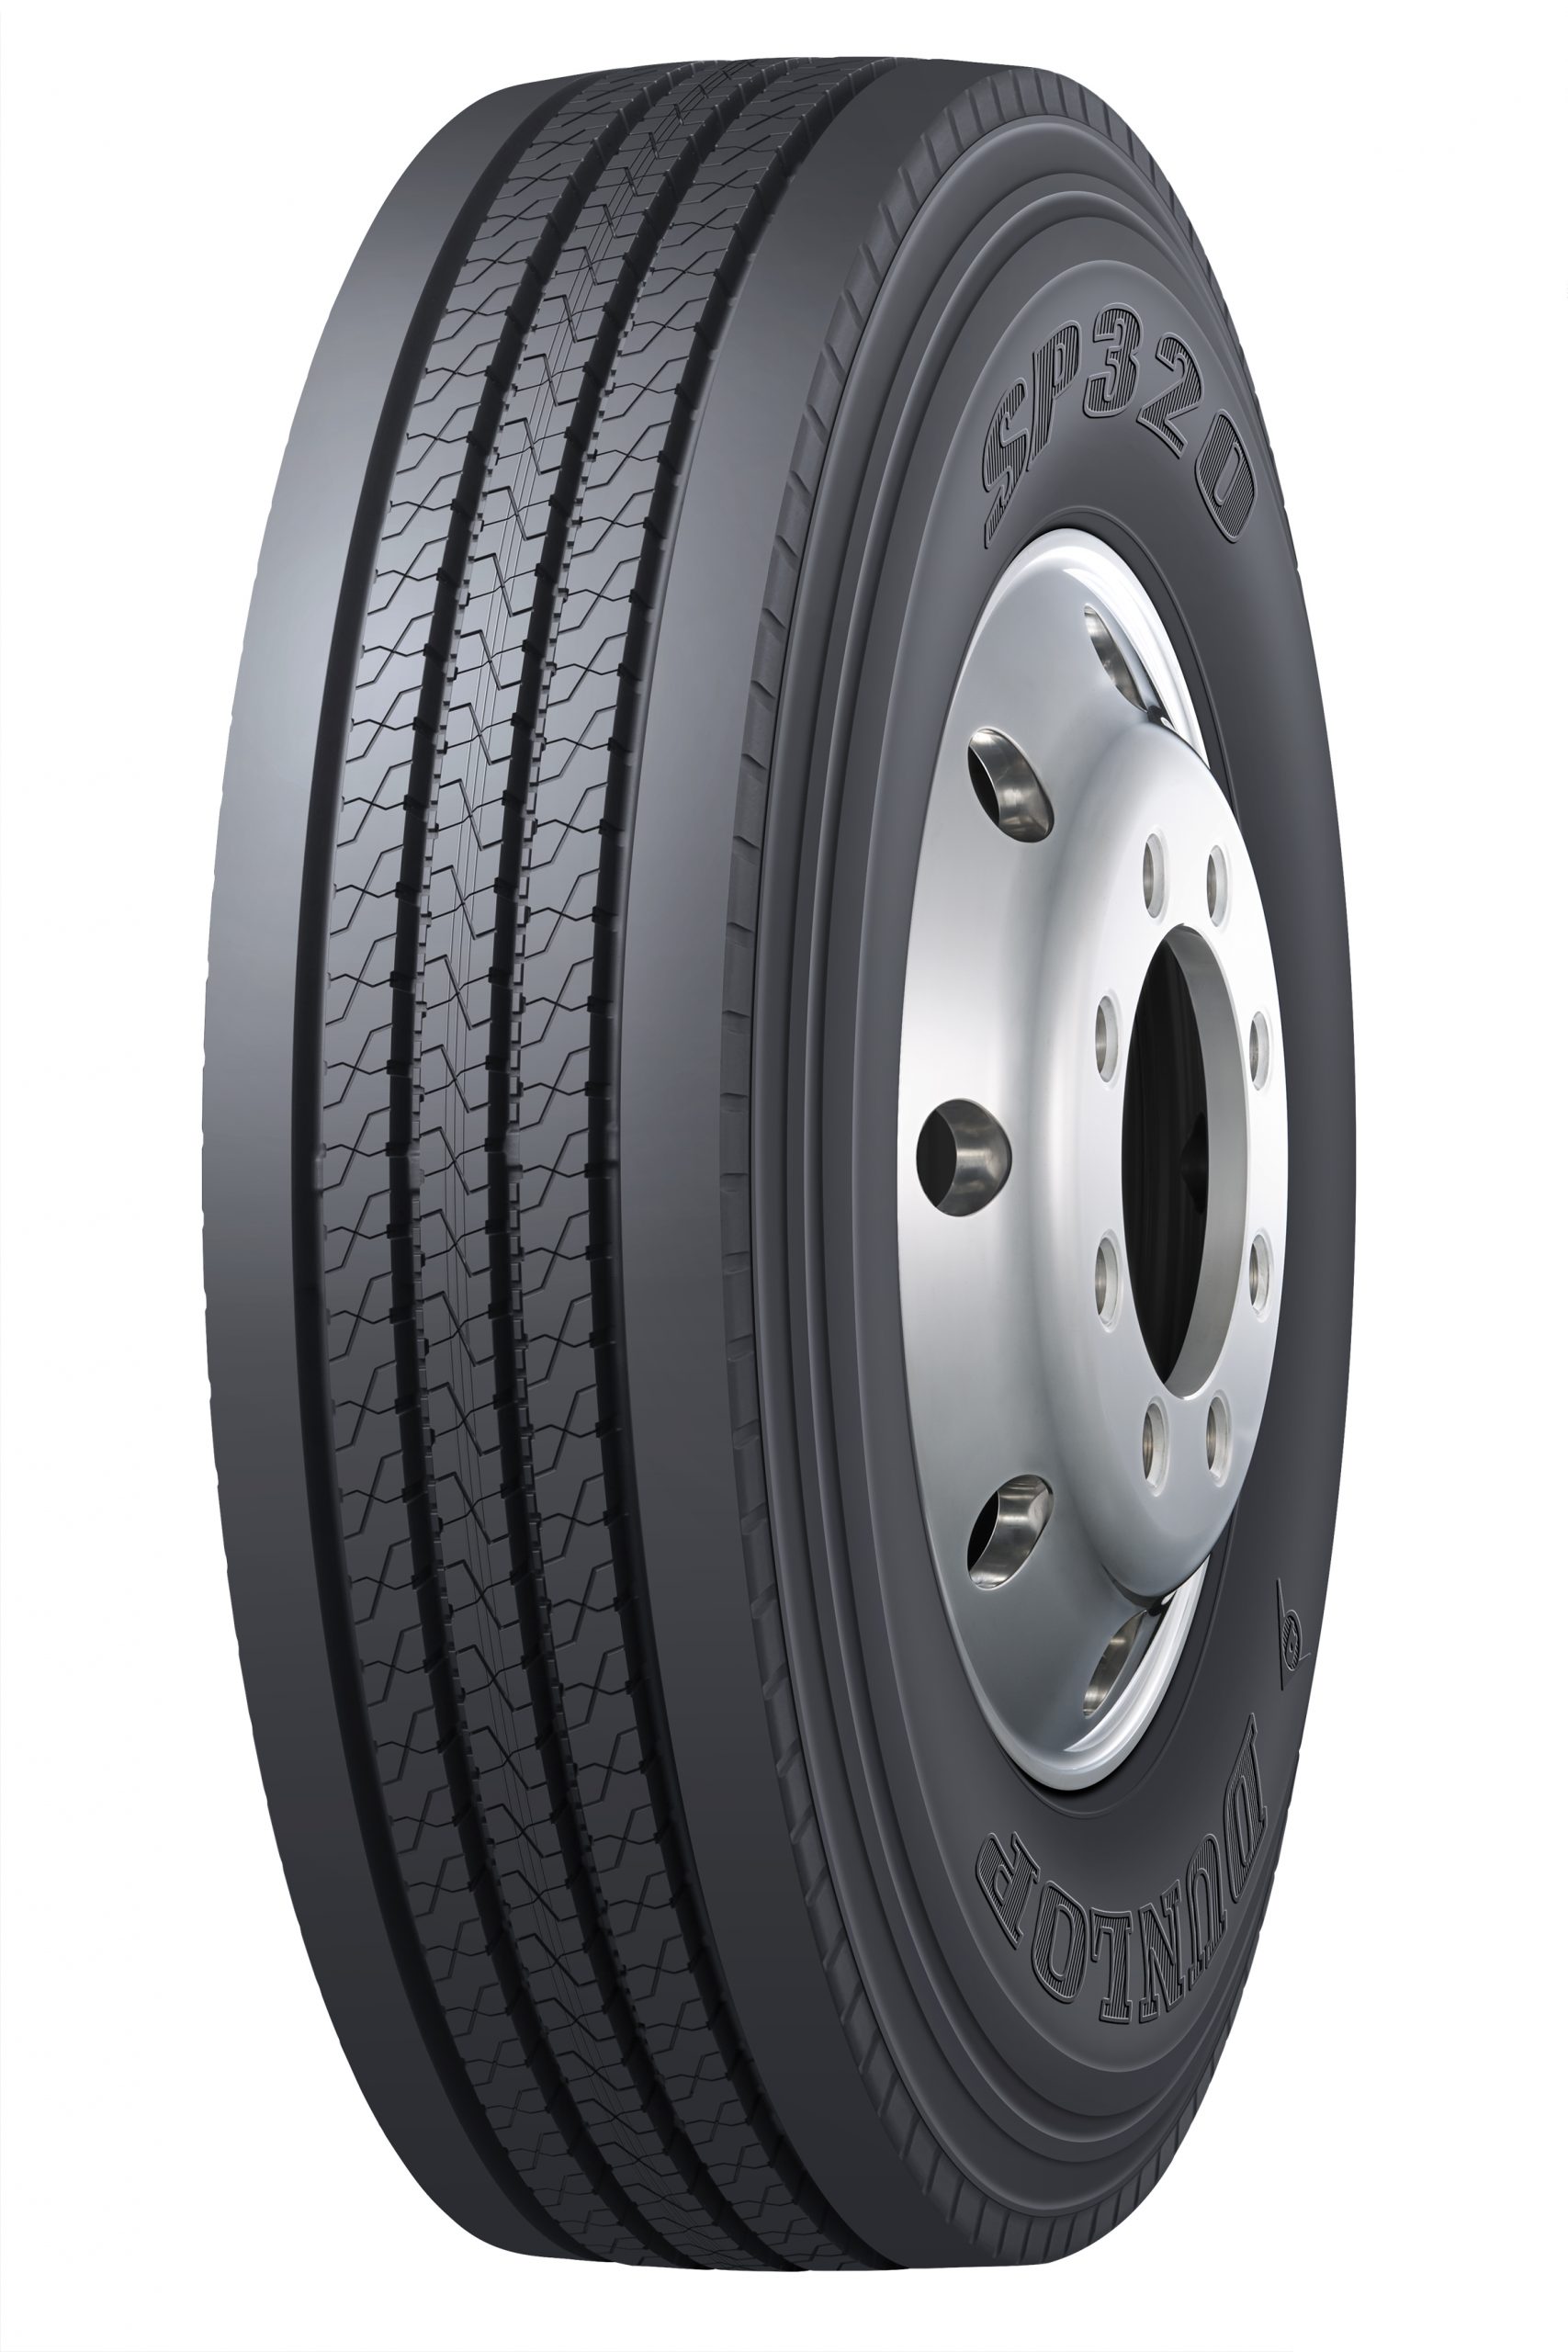 Dunlop amplia garantia de pneus de carga